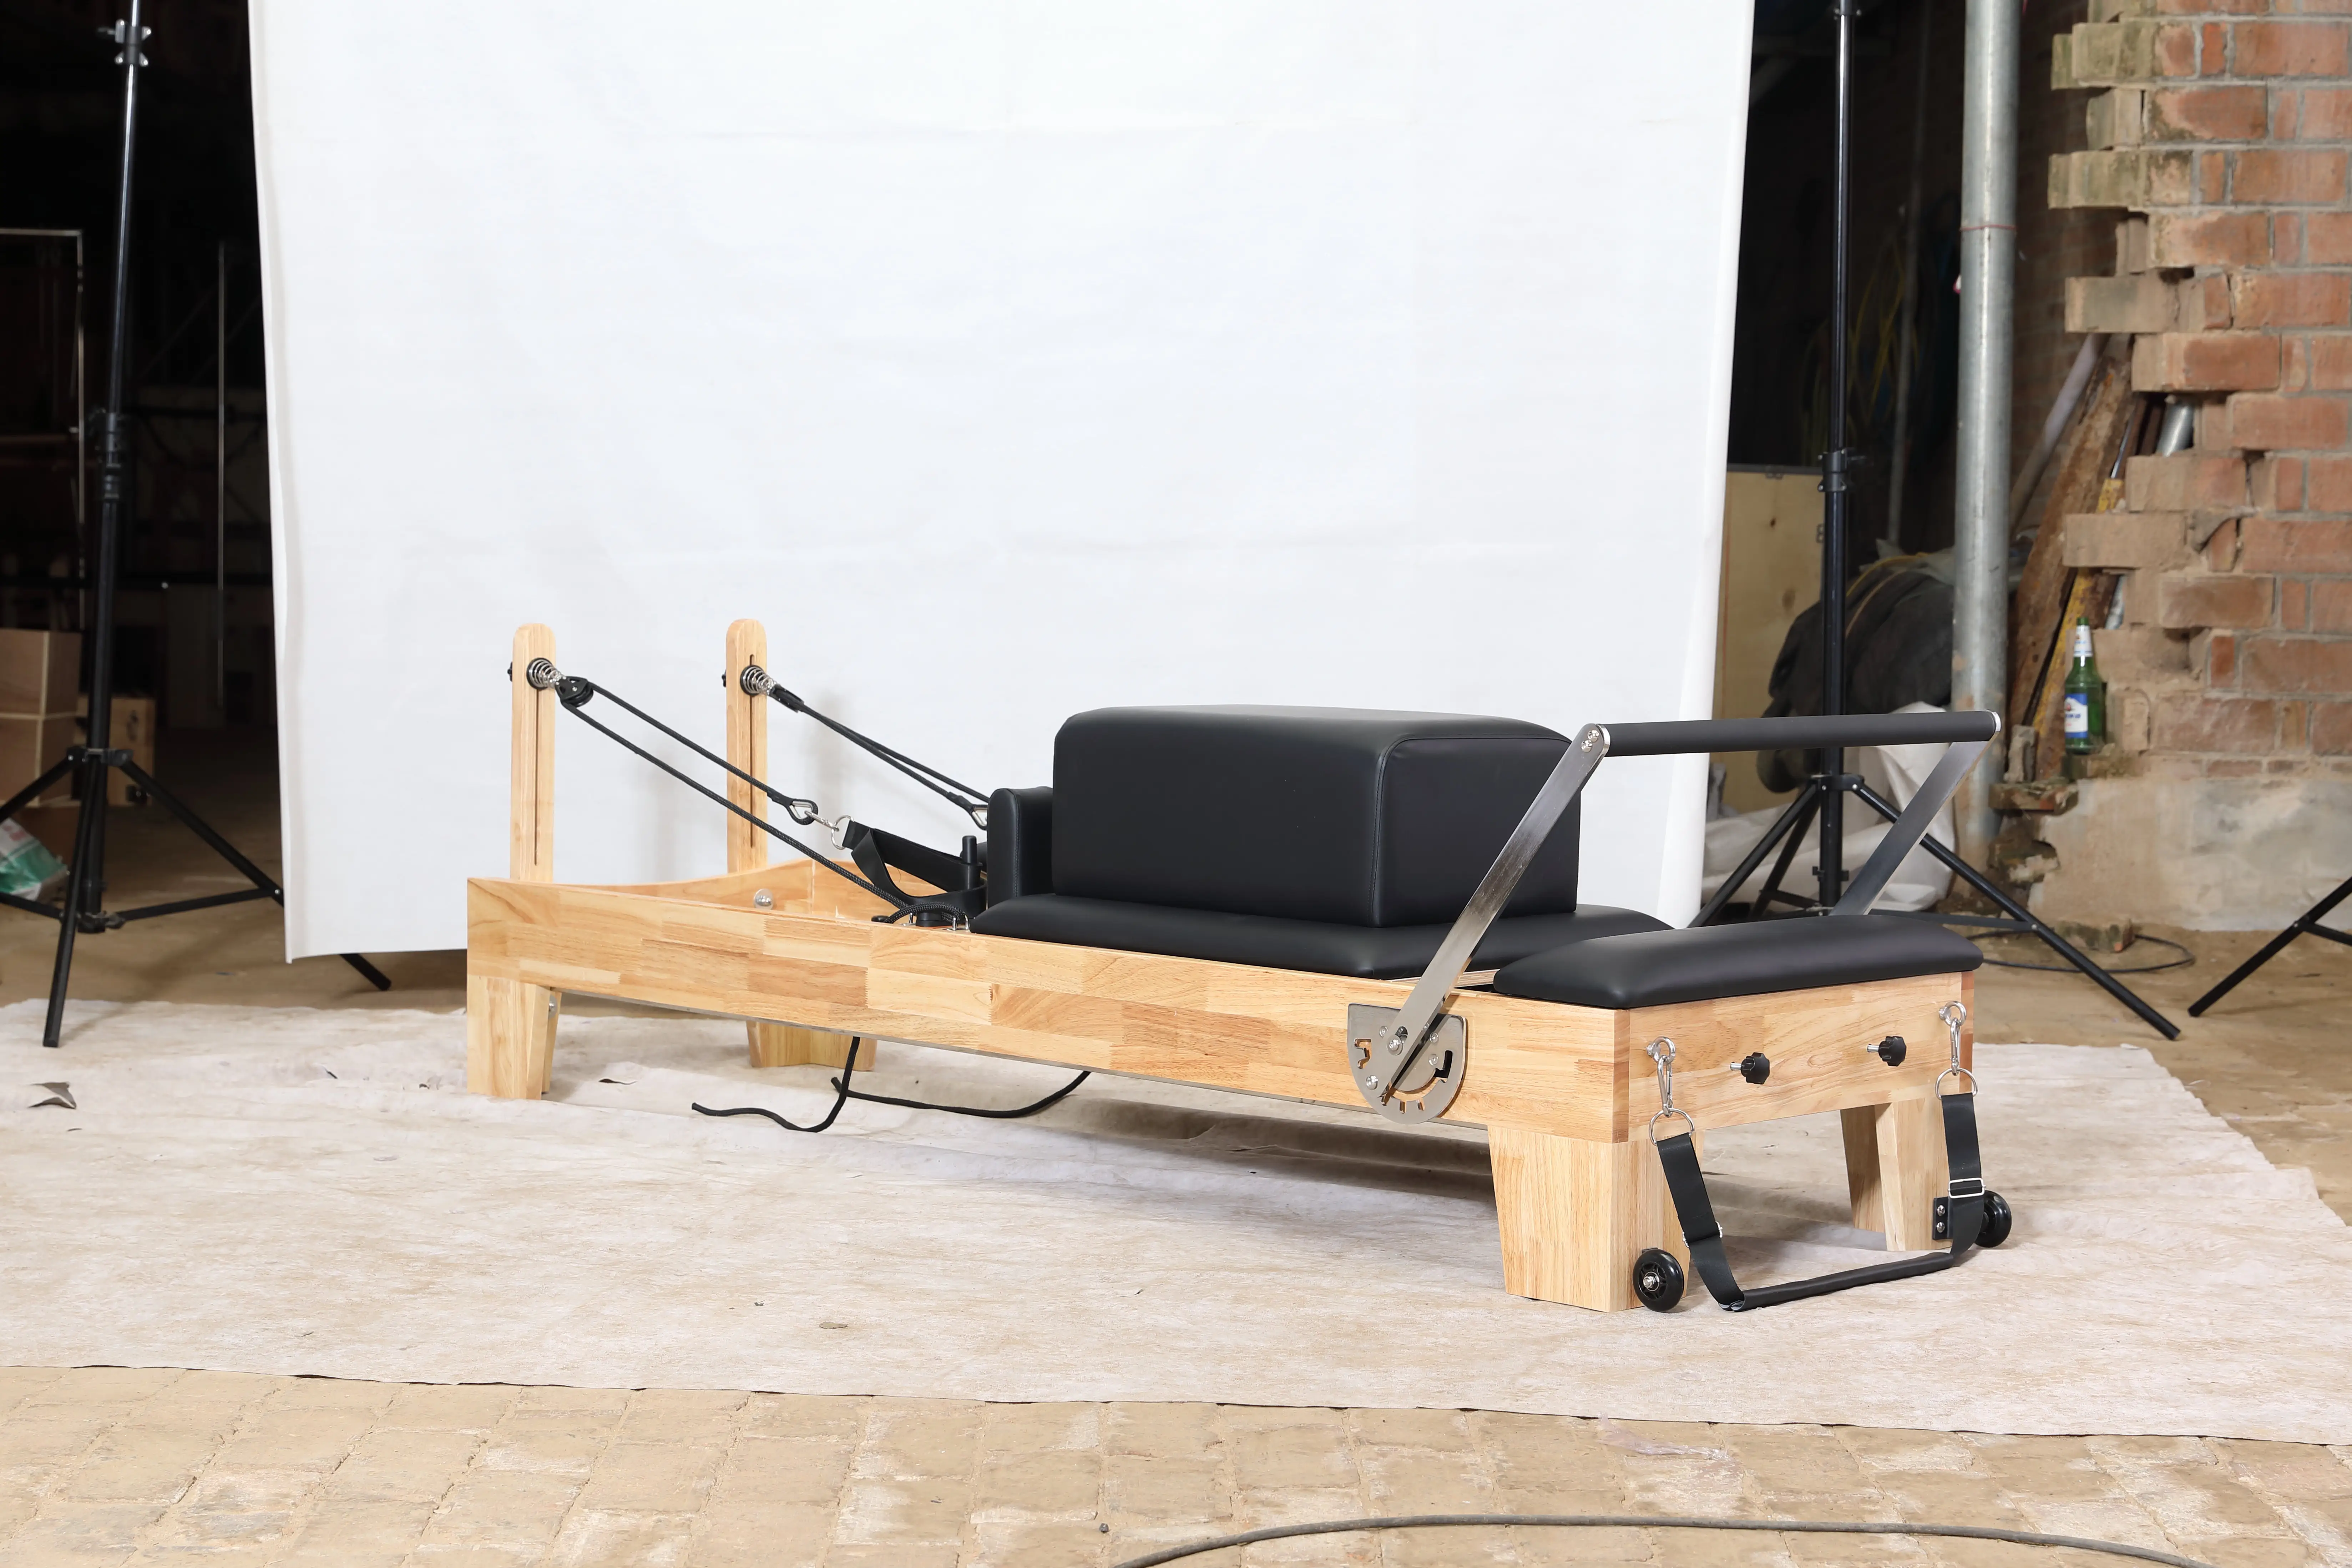 Pilates Studio Body Pilates Reformer Set équilibré professionnel yoga fitness bois Pilates machine lit chaise équipement pour la maison Wo